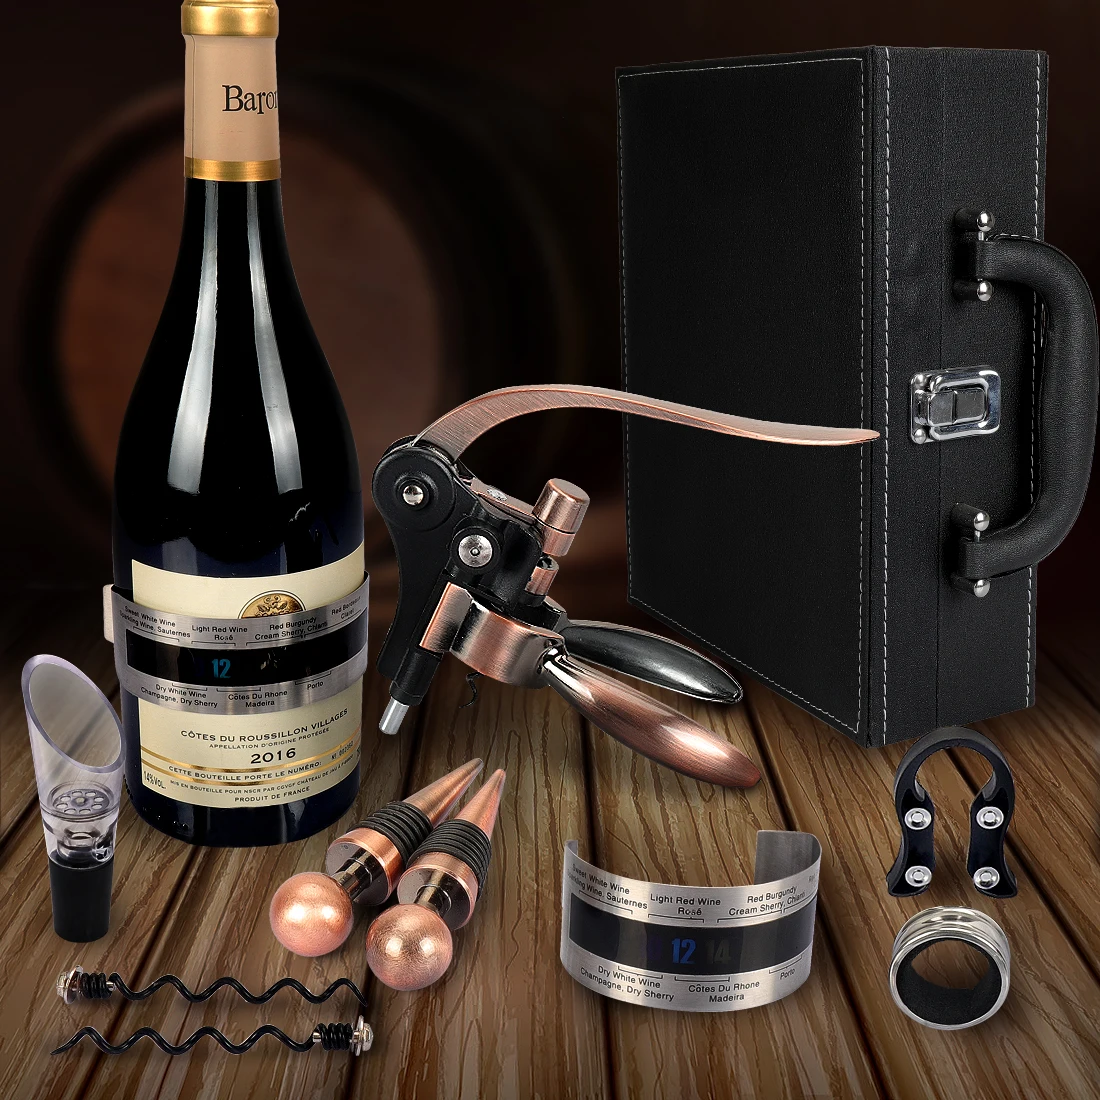 Yobansa Scatola di Legno Accessori per Vino Set Regalo Leather Box 03 cavatappi per Vino Anello per Vino Tappo per Vino versatore Vino 